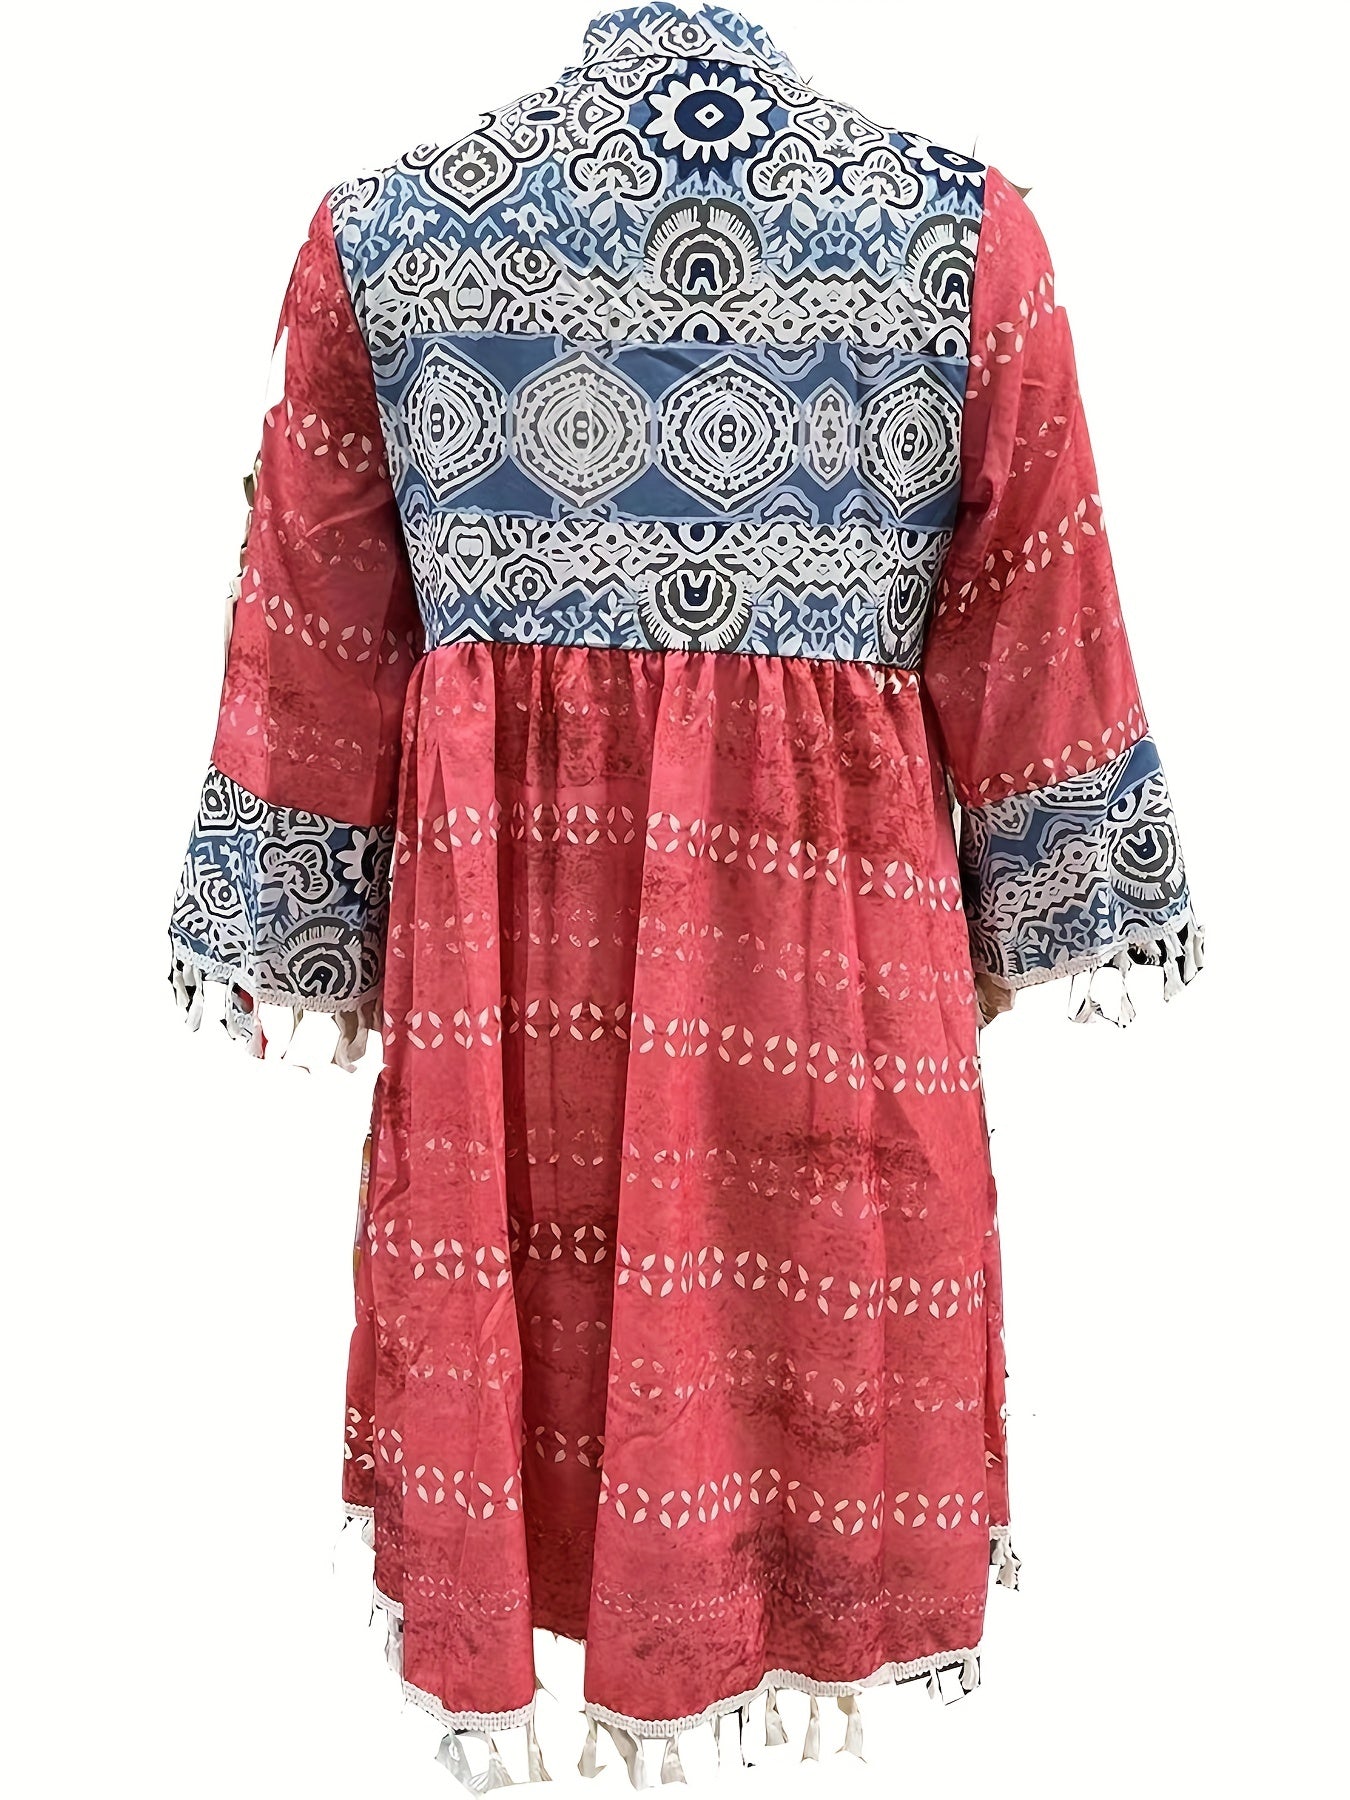 「lovevop」Retro Print Boho Dress, V Neck Tassels Casual Dress For Spring & Summer, Women's Clothing